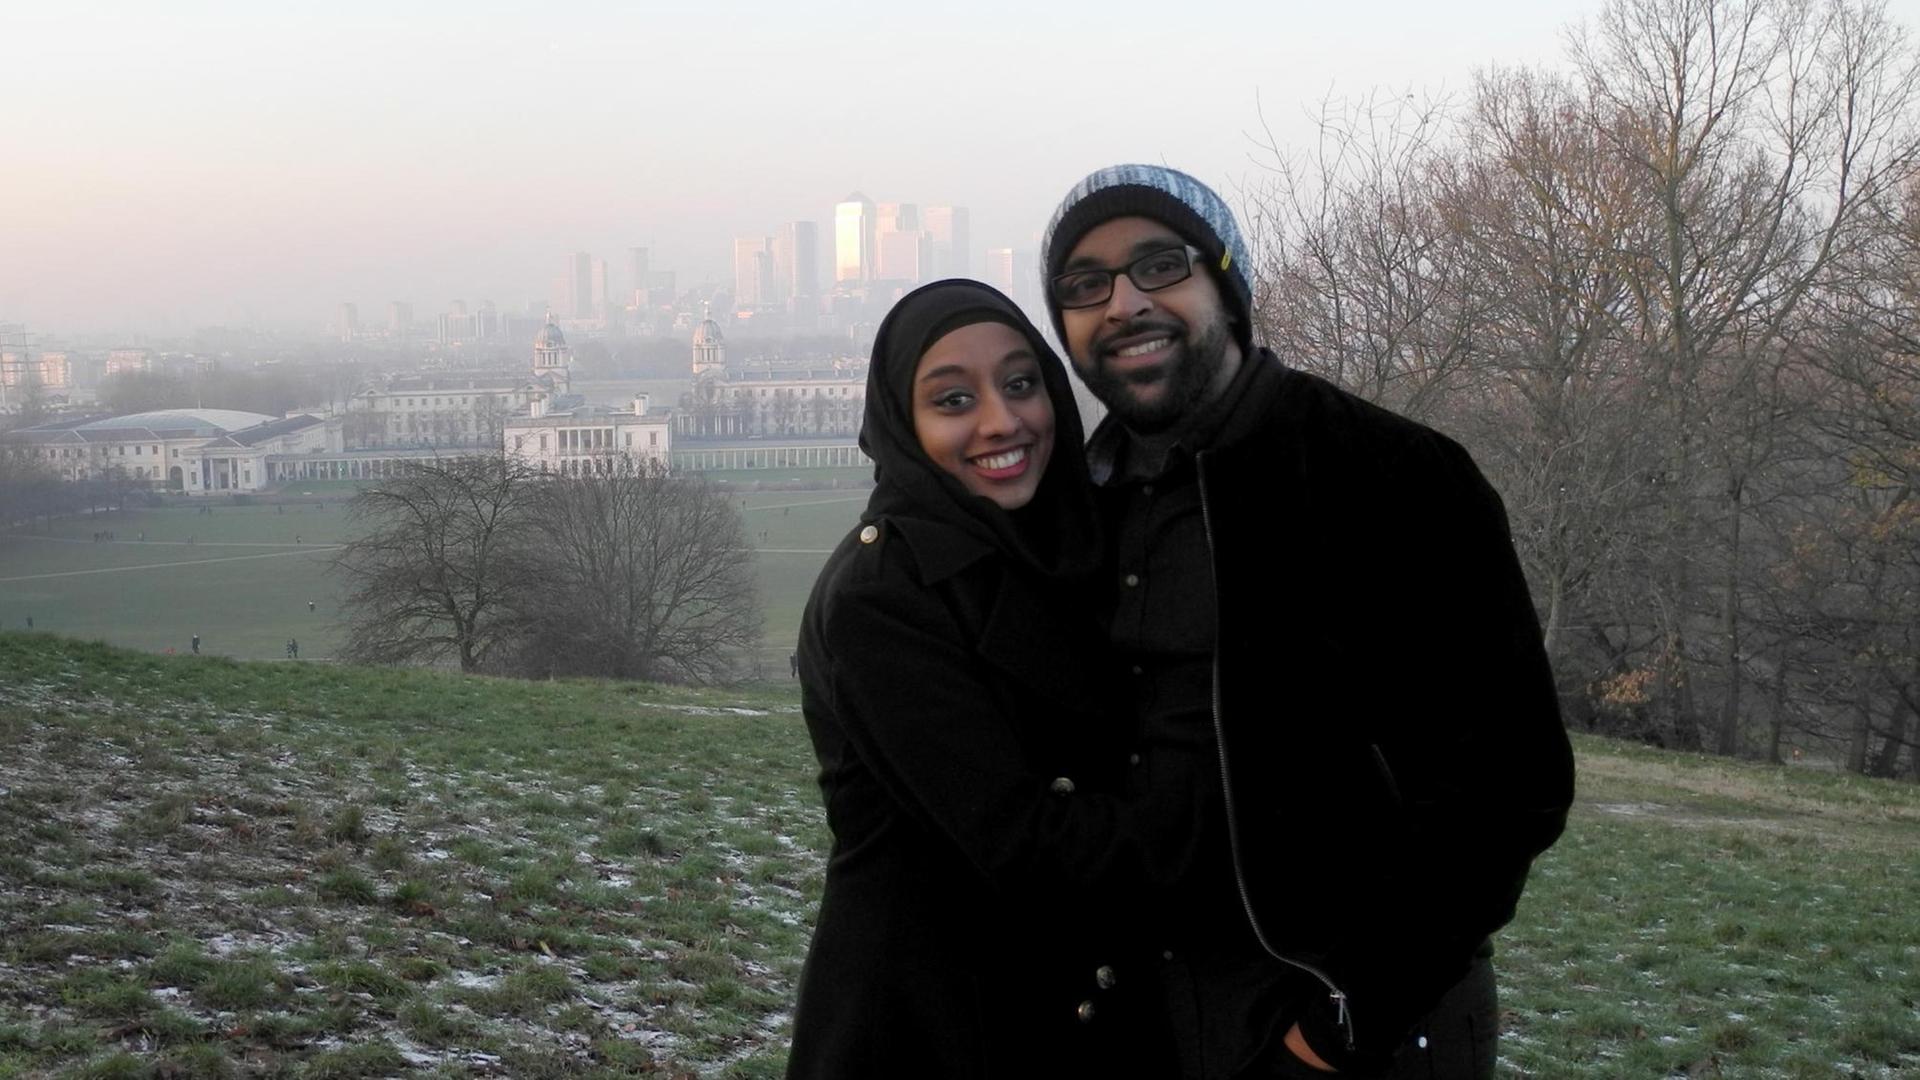 Über die Dating-App Muzmatch kennengelernt, inzwischen verheiratet: ein englisches Paar im Greenwich Park